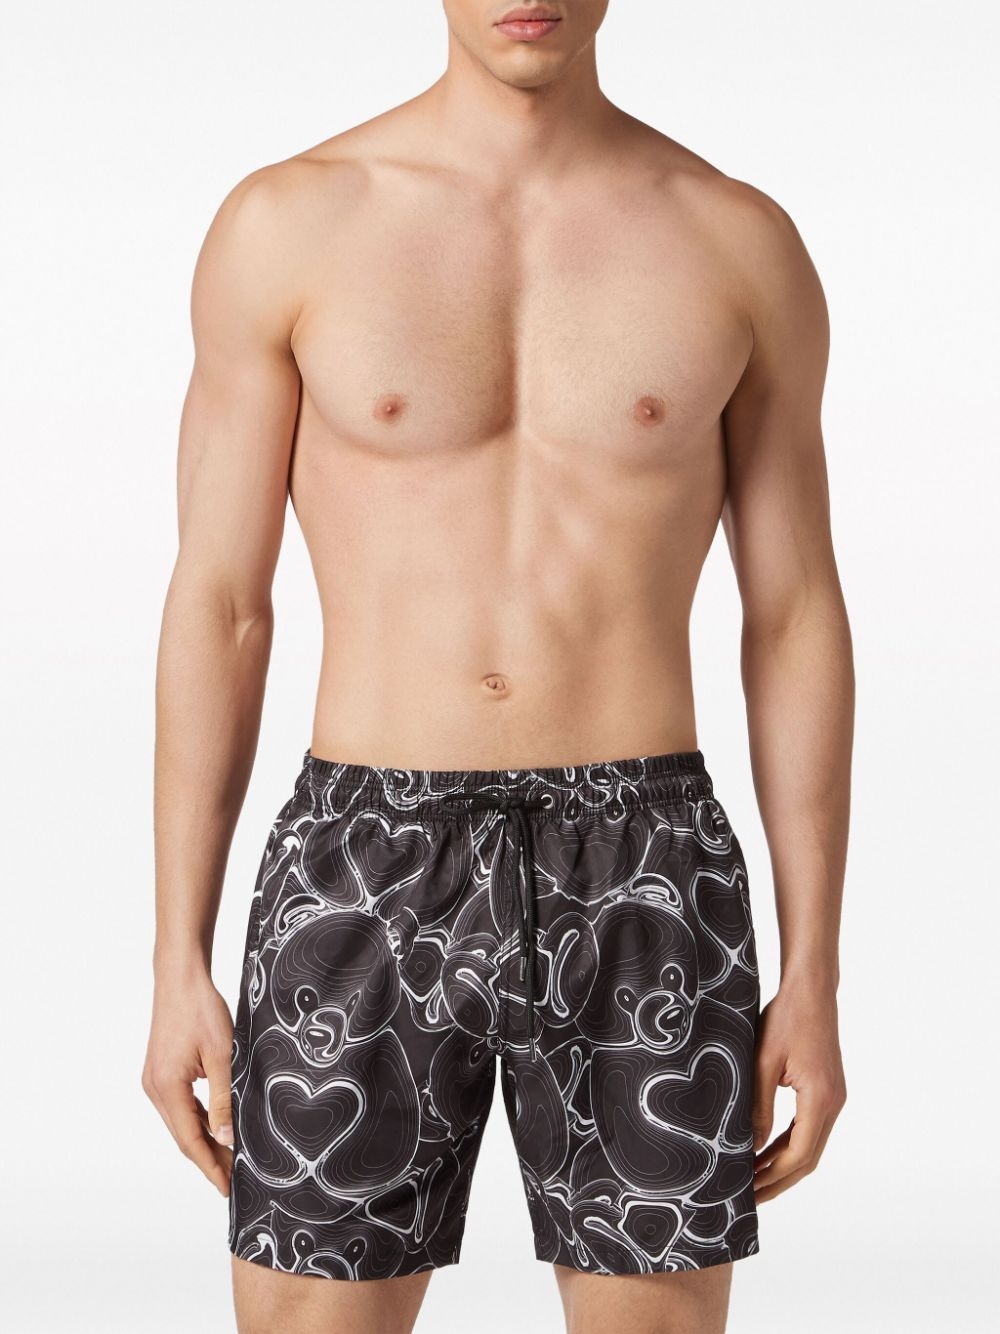 bear-print swim shorts - 3